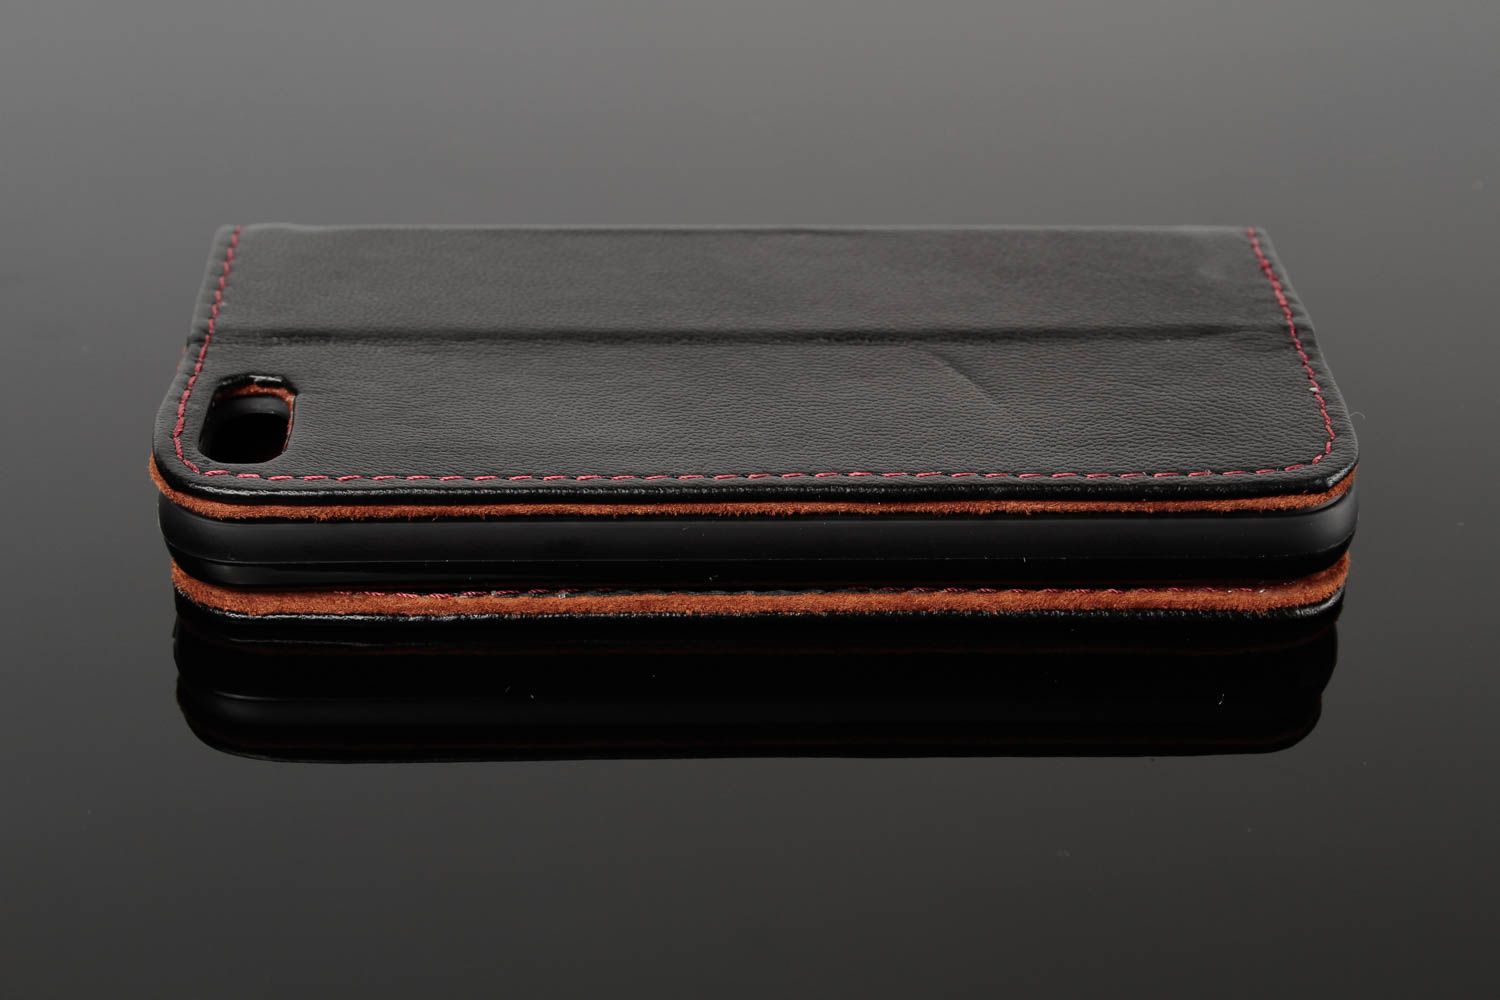 Чехол на телефон хэнд мэйд аксессуар для смартфона кожаный чехол черный фото 3